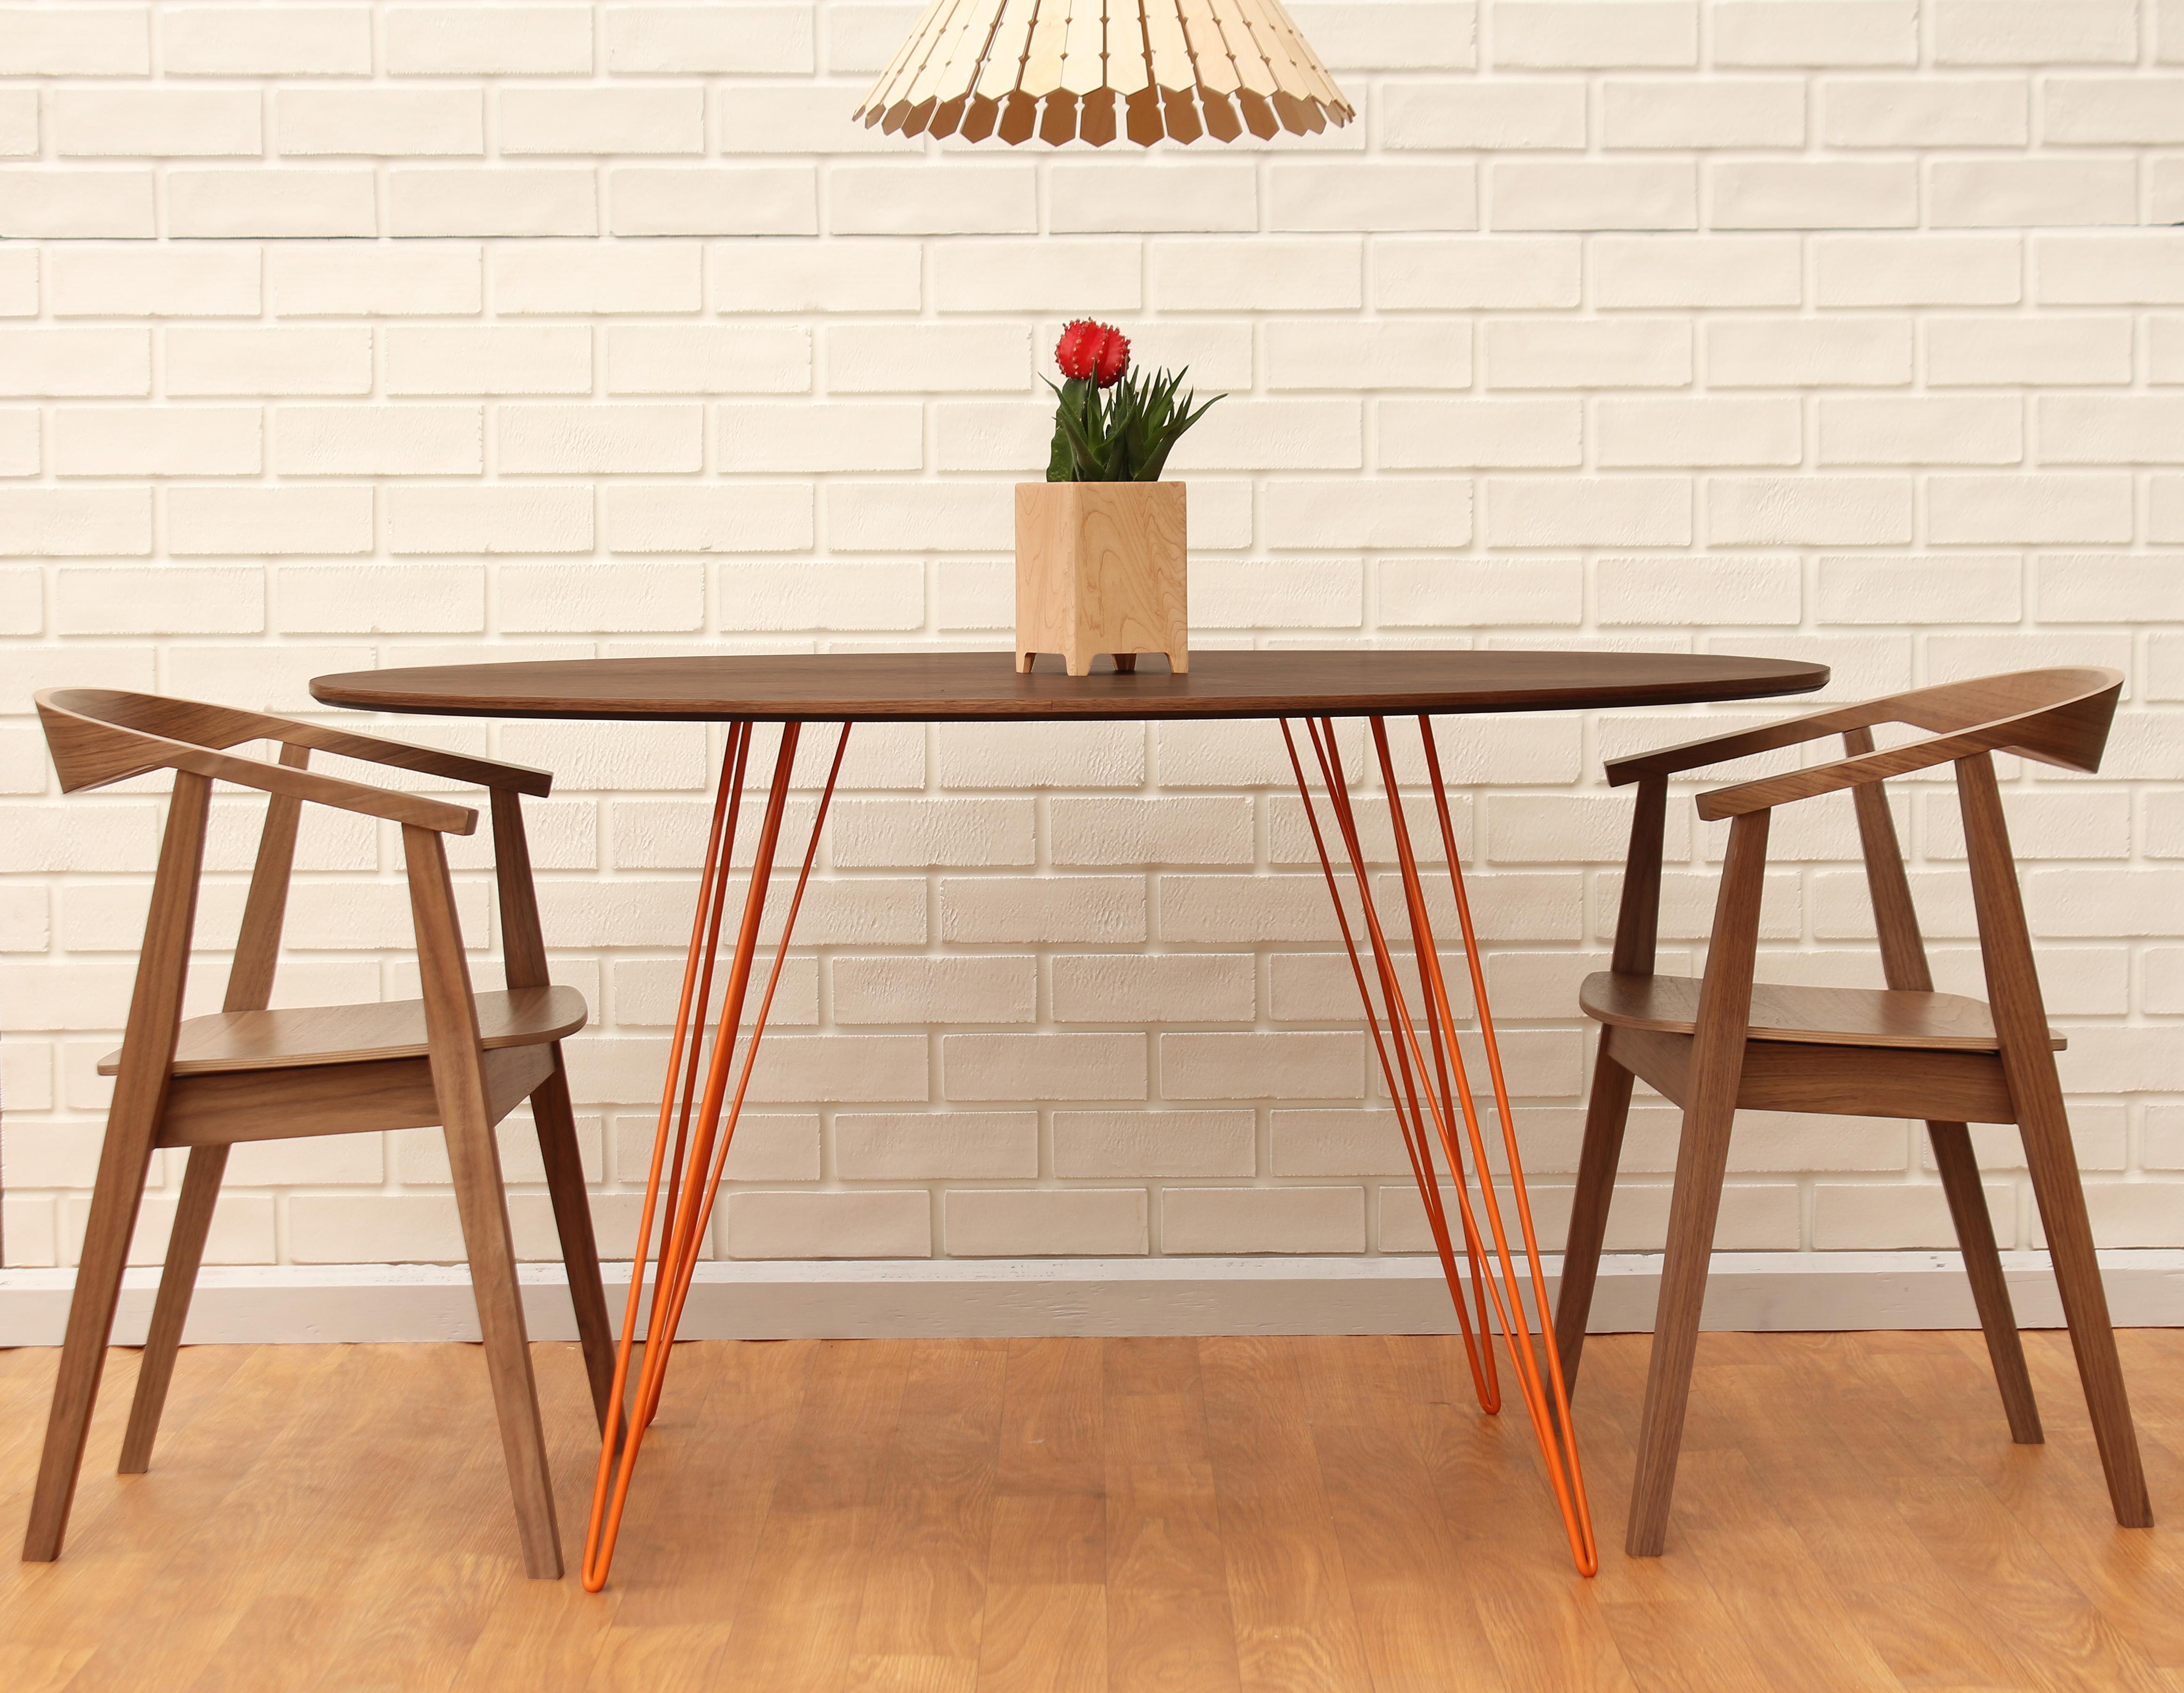 Ein schlanker, eleganter und leichter Tisch, der in Form, Größe und Farbe beliebig angepasst werden kann. Dieses handgefertigte Möbelstück kombiniert perfekt industrielle Haarnadelbeine mit einer abgeschrägten Holzplatte. Die unregelmäßige Schönheit